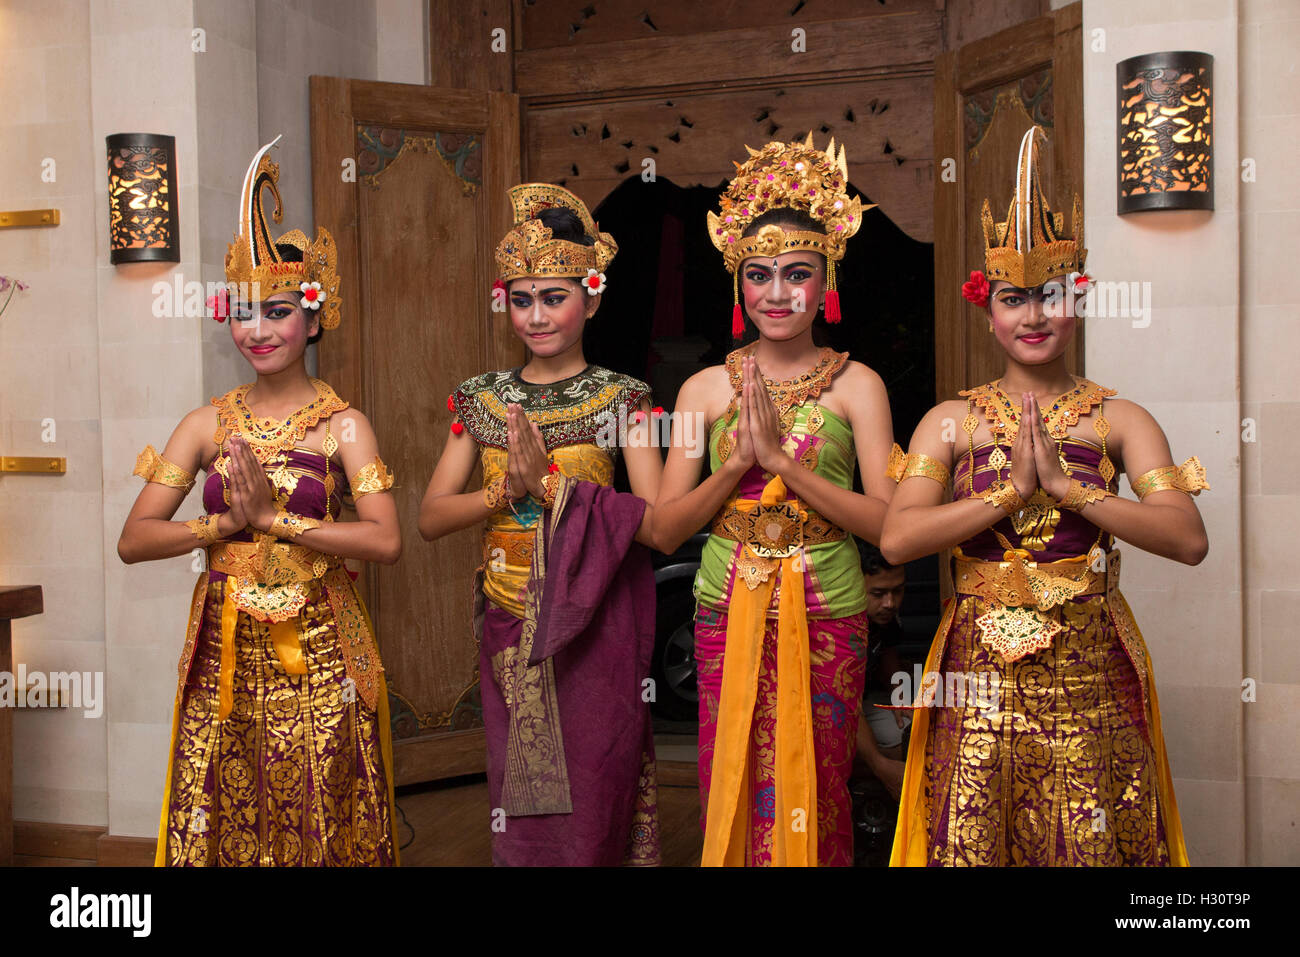 Indonesien, Bali, Amed, Gruppe von jungen balinesische Tänzerinnen mit Händen im respektvollen Gebet position Stockfoto